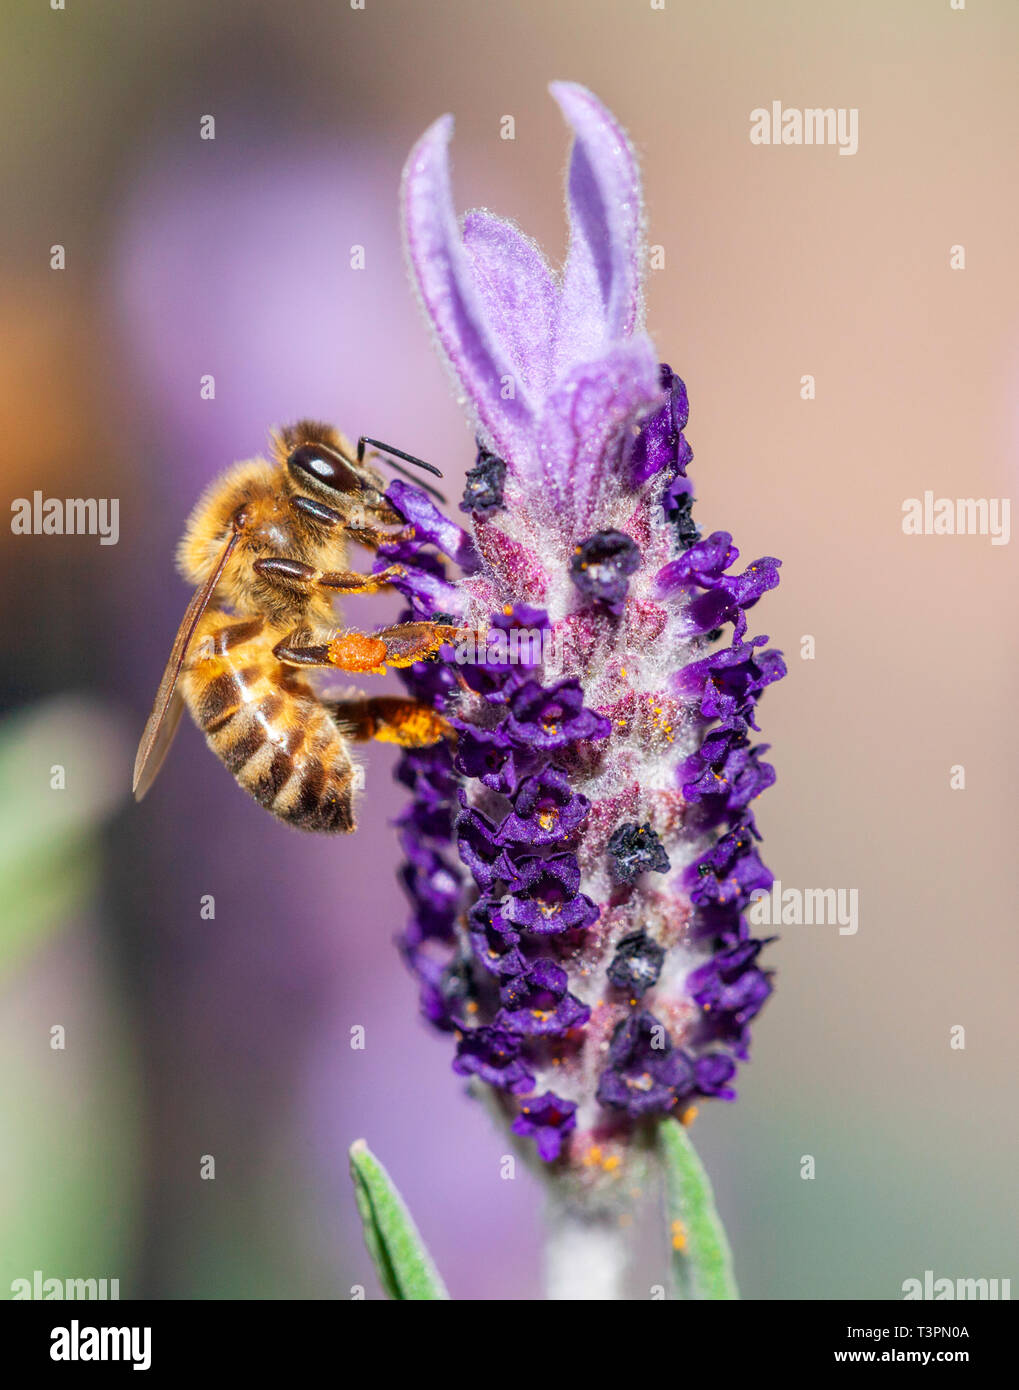 Die europäische Honigbiene (Apis mellifera) auf einer französischen Lavendel Blume (lavandula stoechas). Auch als die Westliche Honigbiene bekannt. Stockfoto